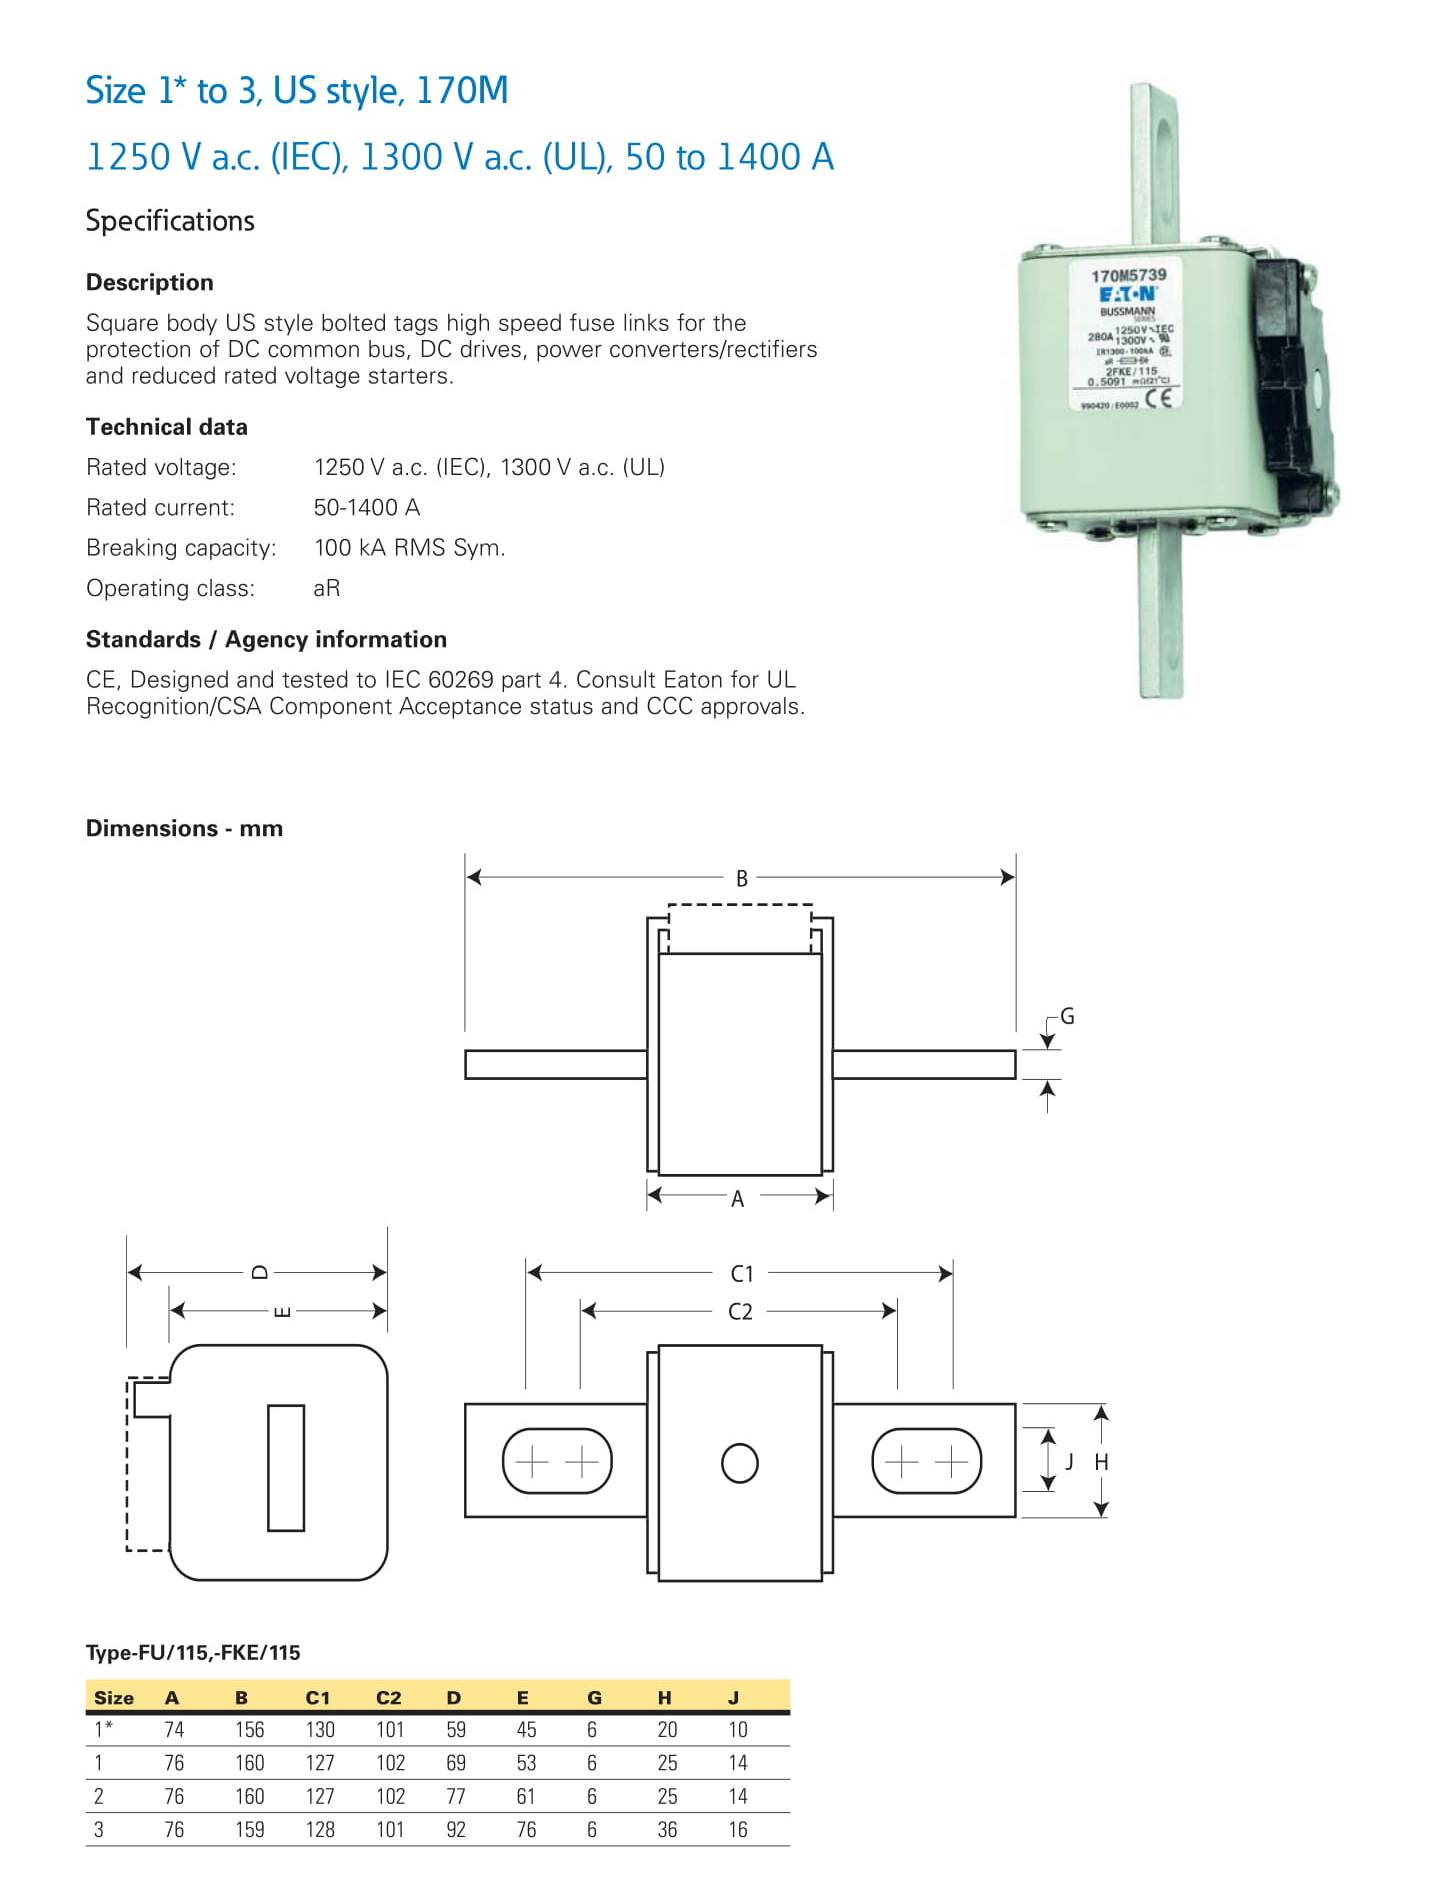 Square Body Fuse Links 1250V(IEC) 50 to 1400A